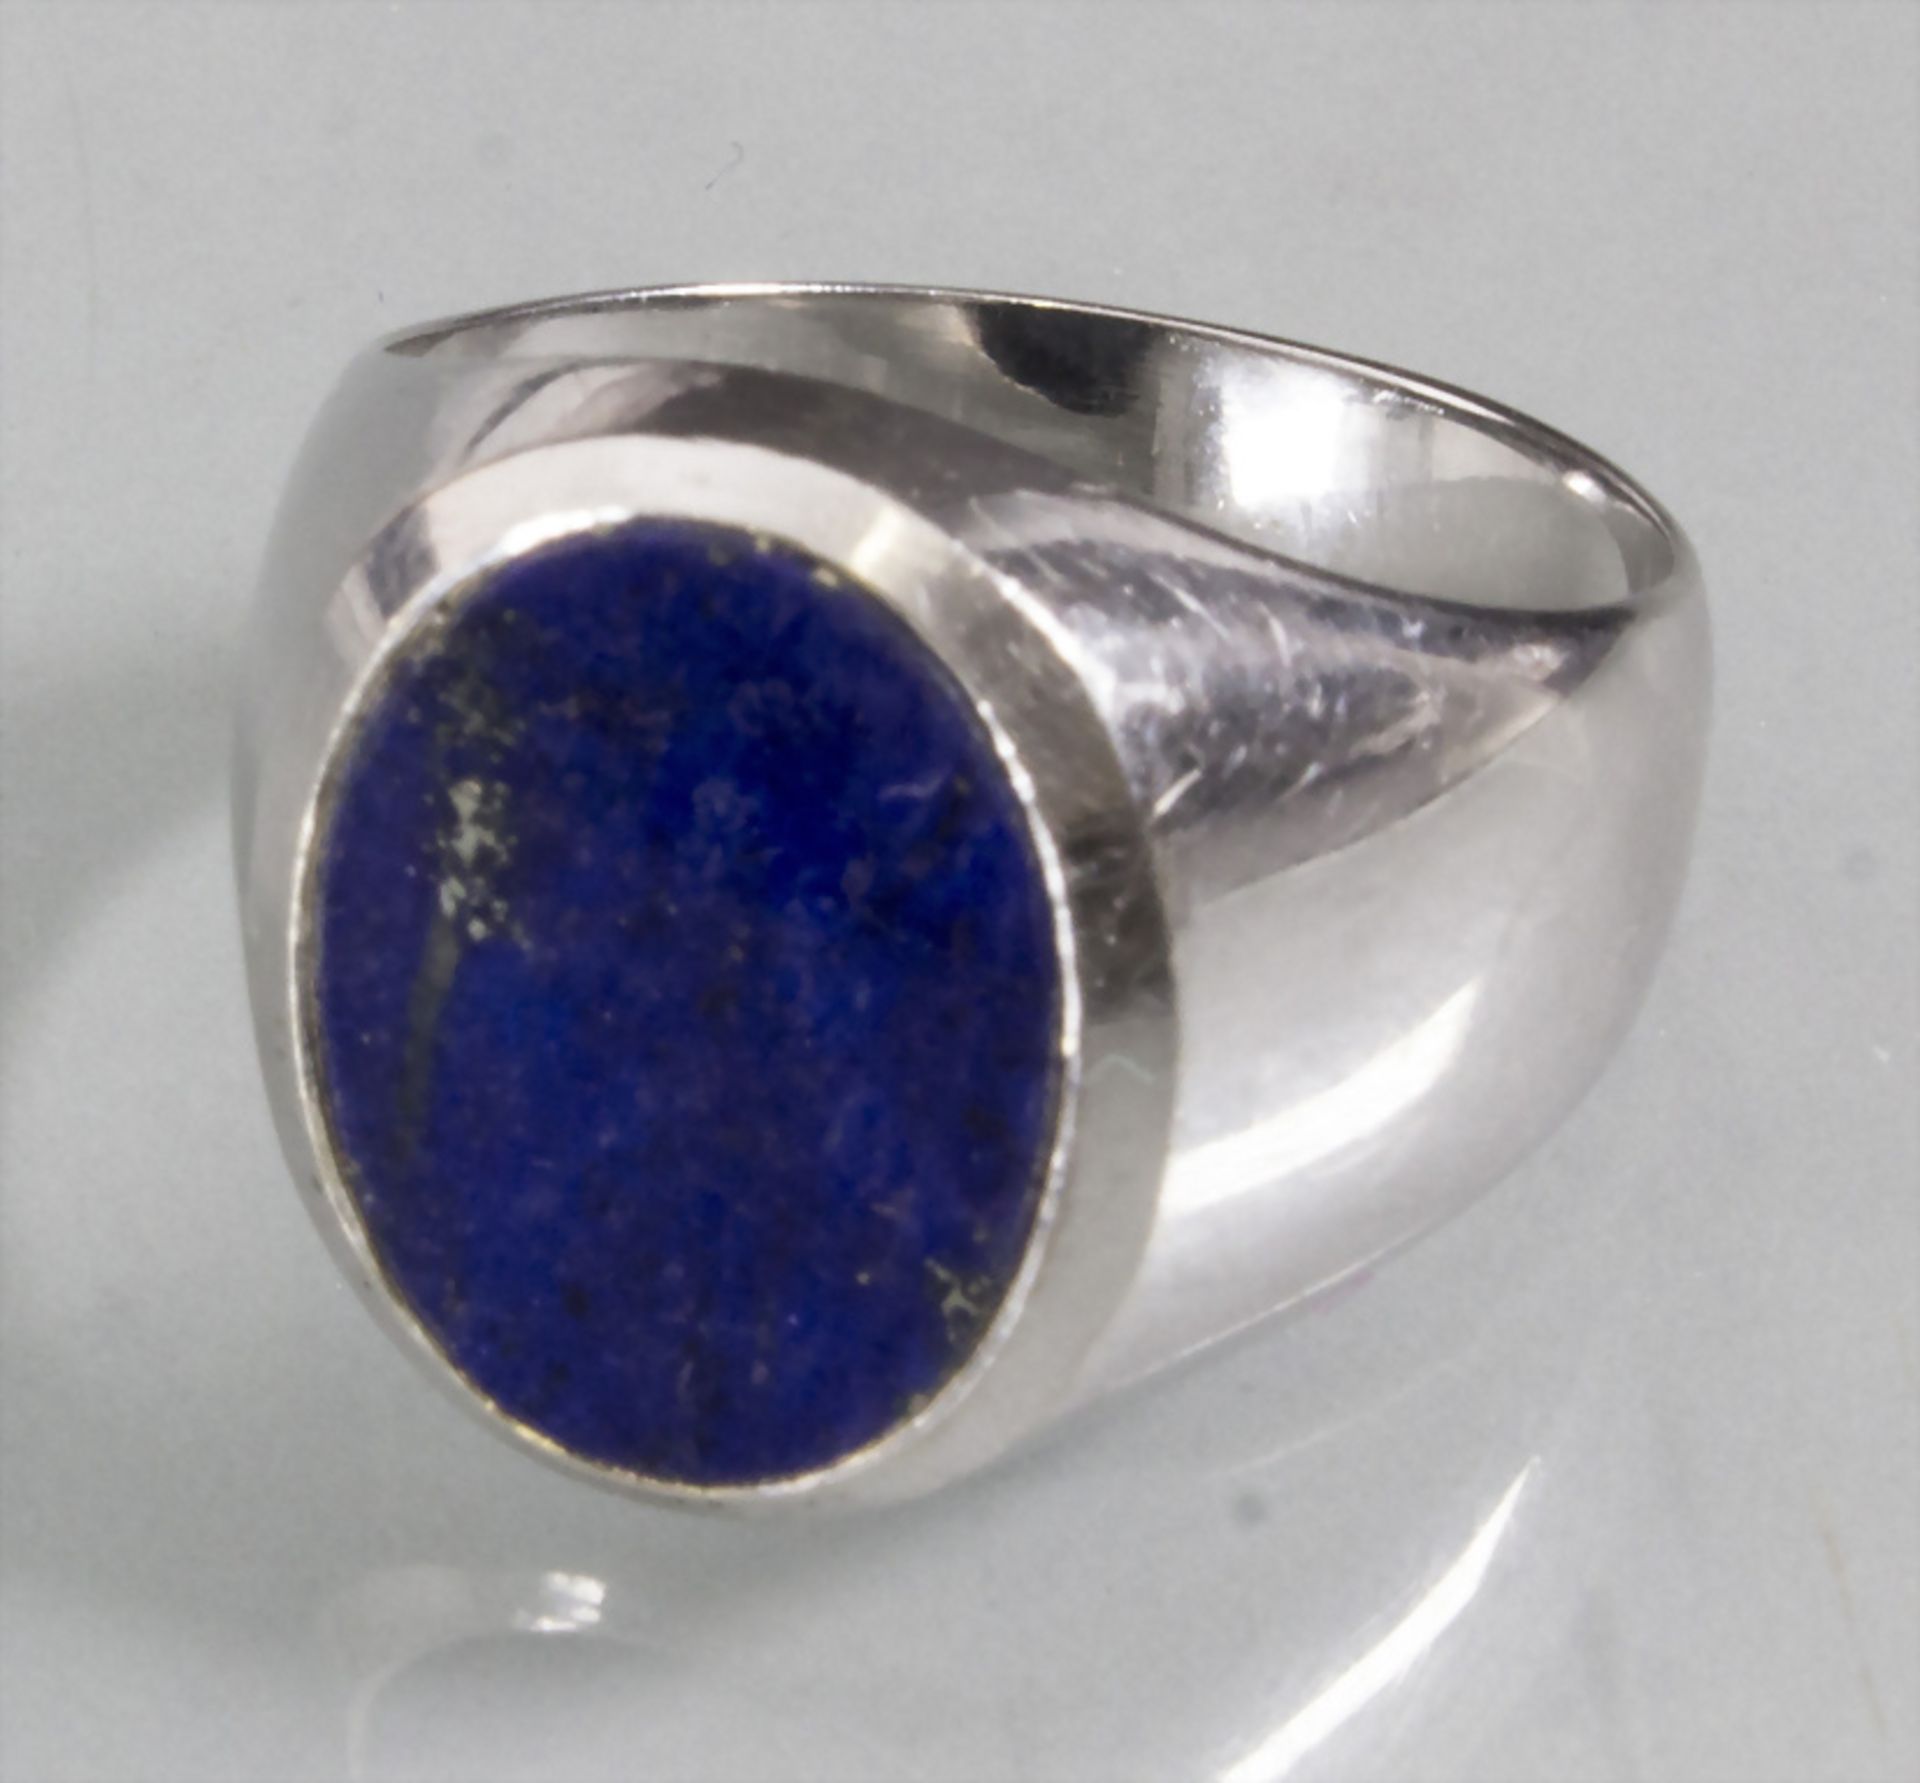 Herrenring mit Lapislazuli / A men's 14ct gold ring with lapis lazuli